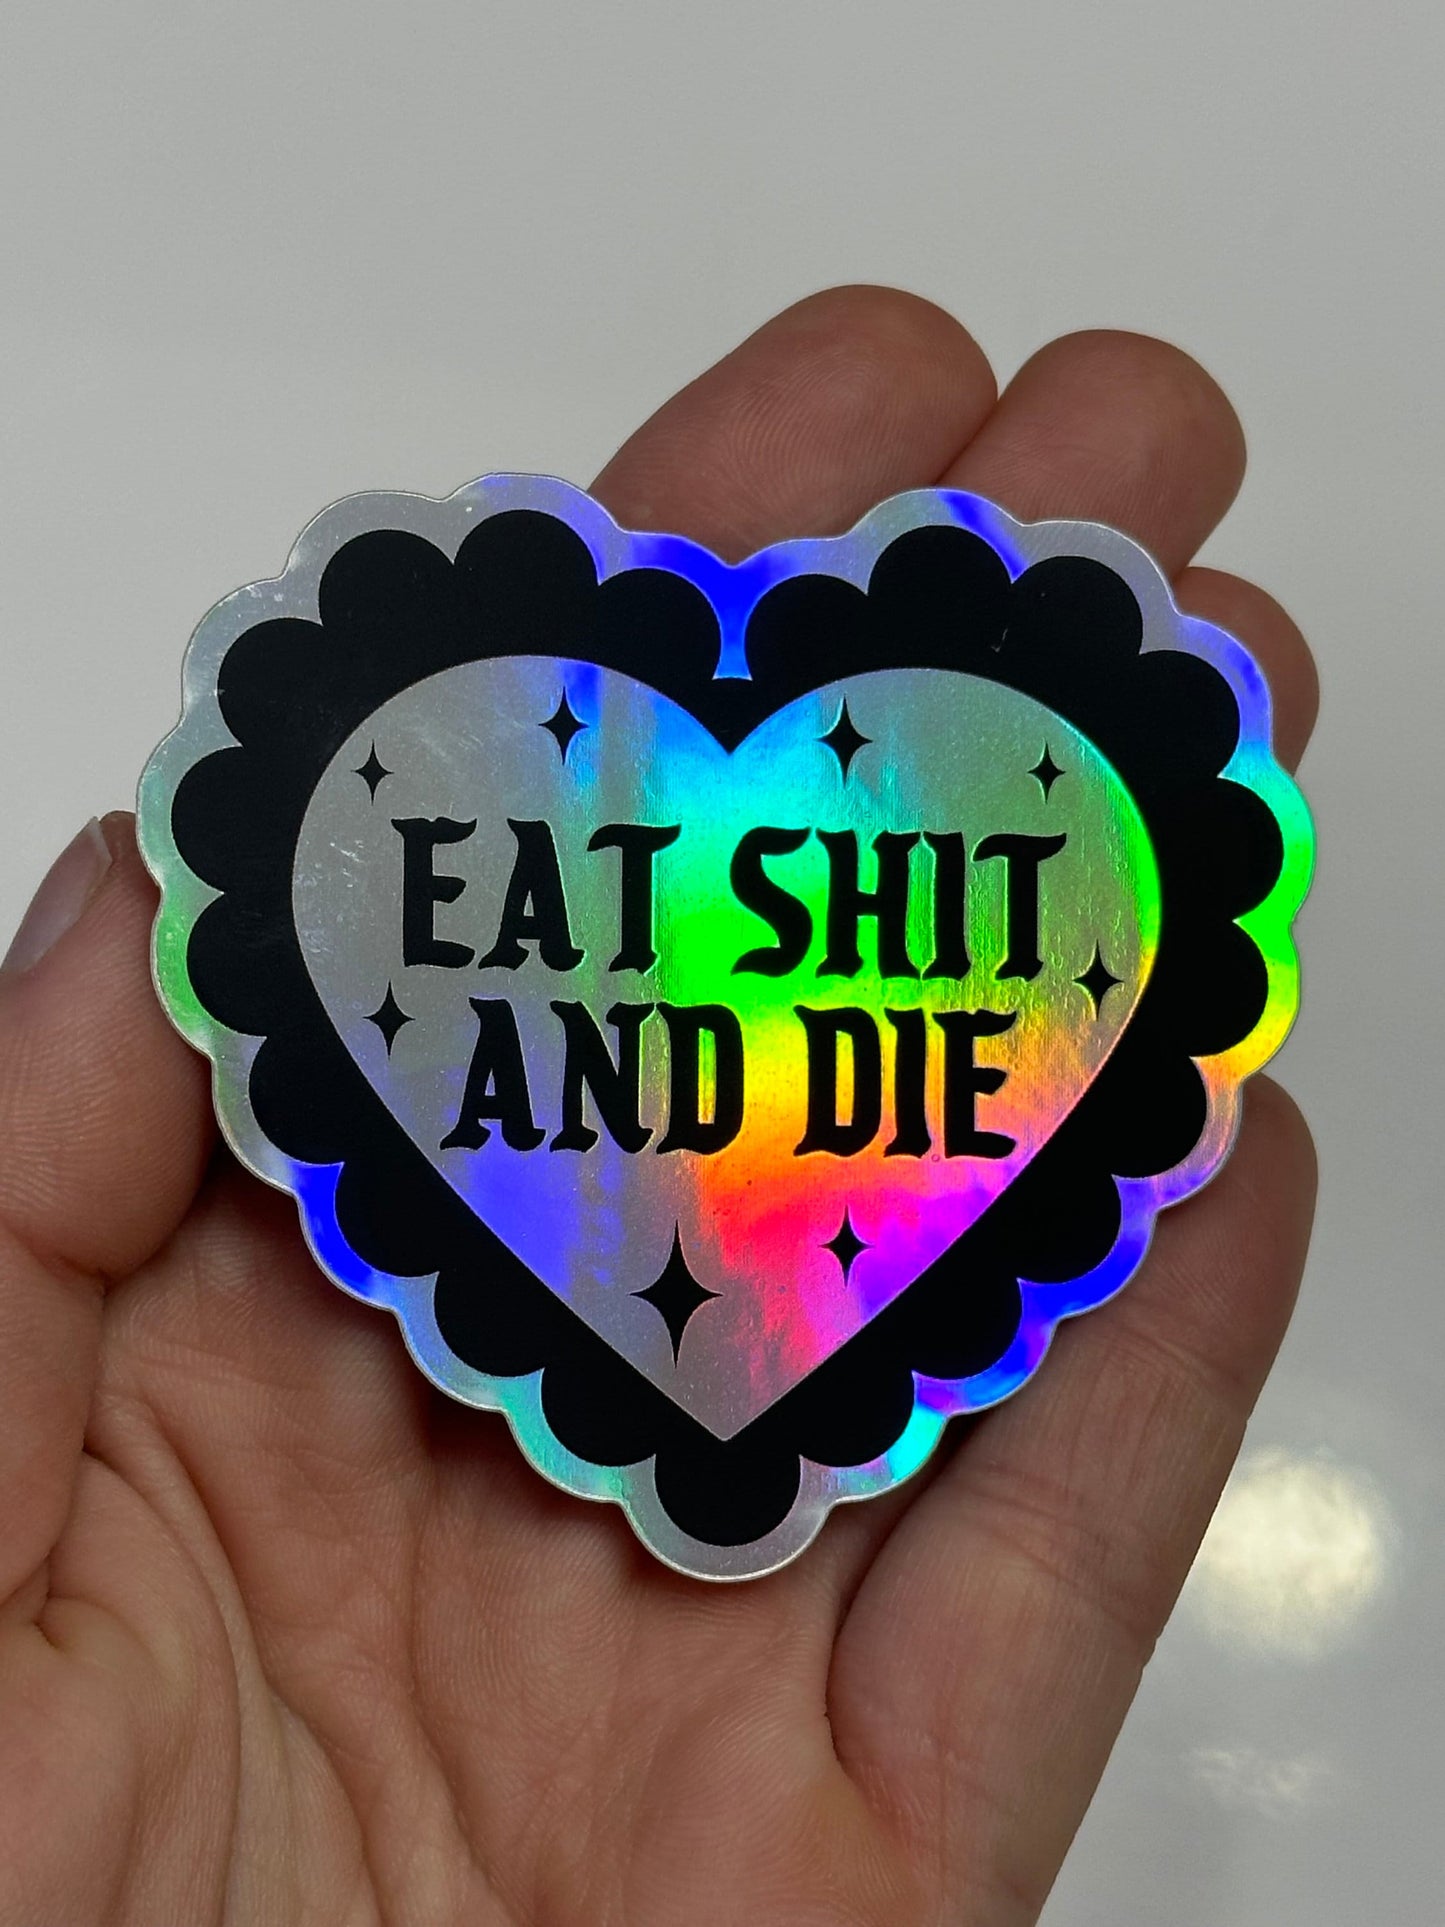 Eat Shit & Die Holographic Sticker 2.7x2.5